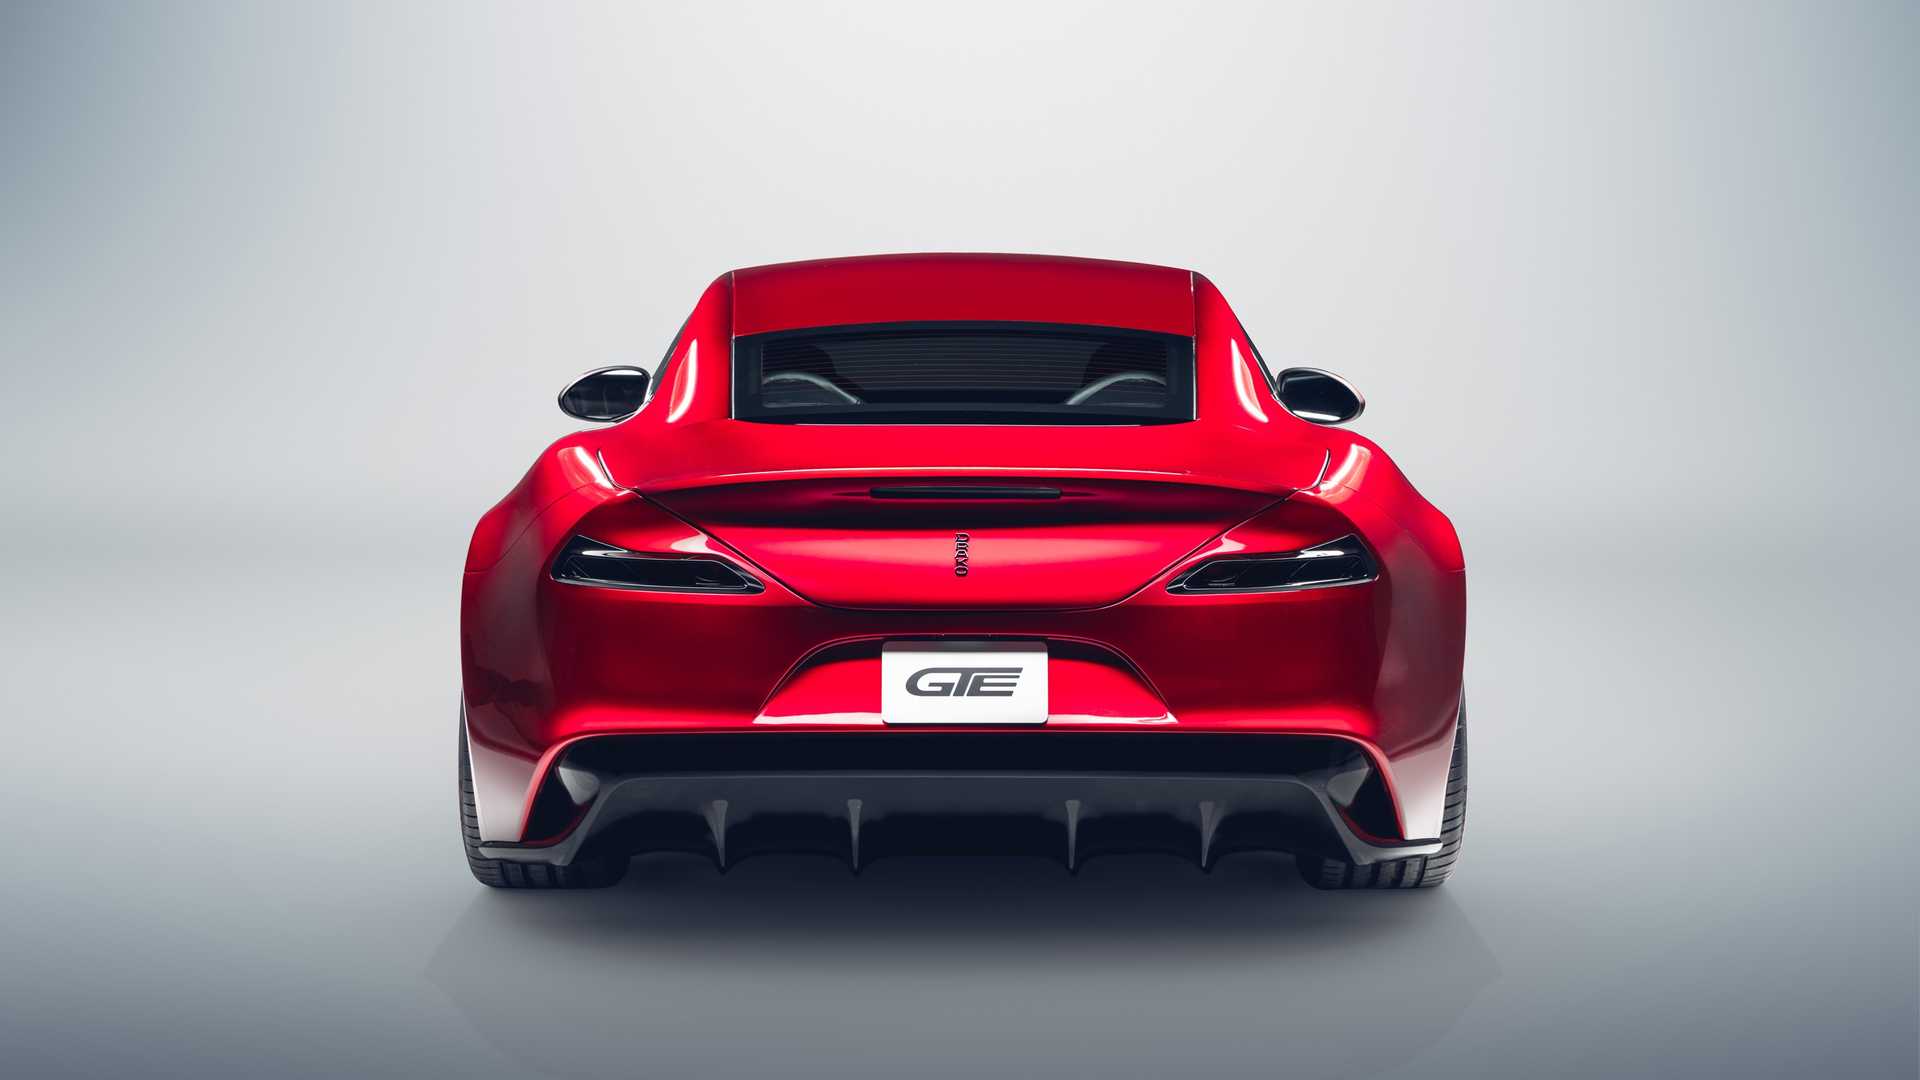 2020 Drako GTE “Şimdiye Kadar Yapılan En Güçlü GT Araba”